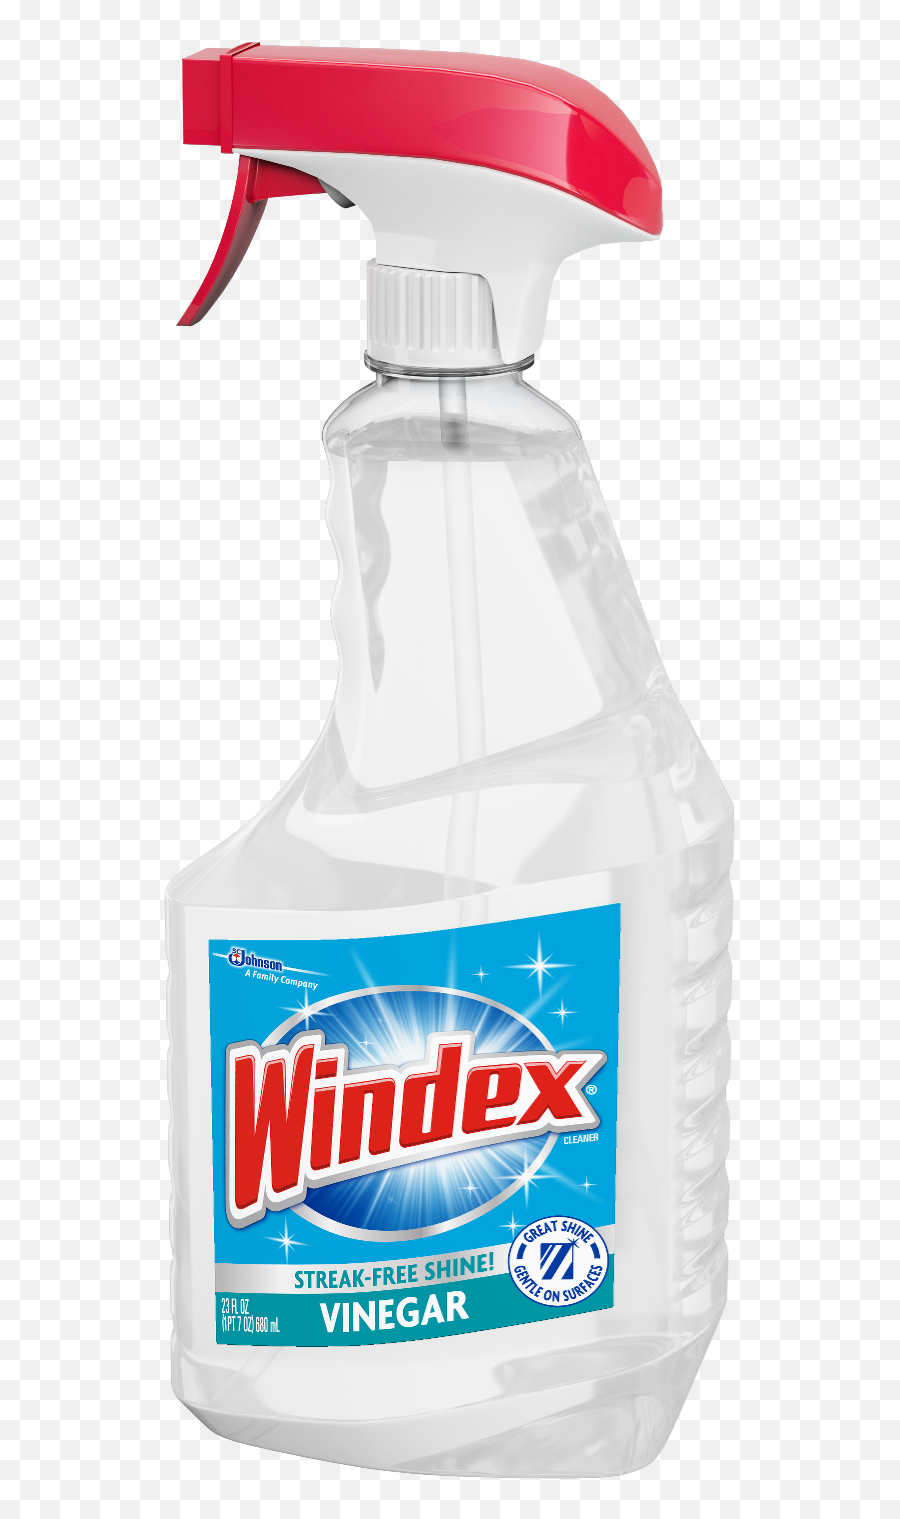 Windex Bottle Transparent Png Image - Transparent Windex Bottle Png,Windex Png